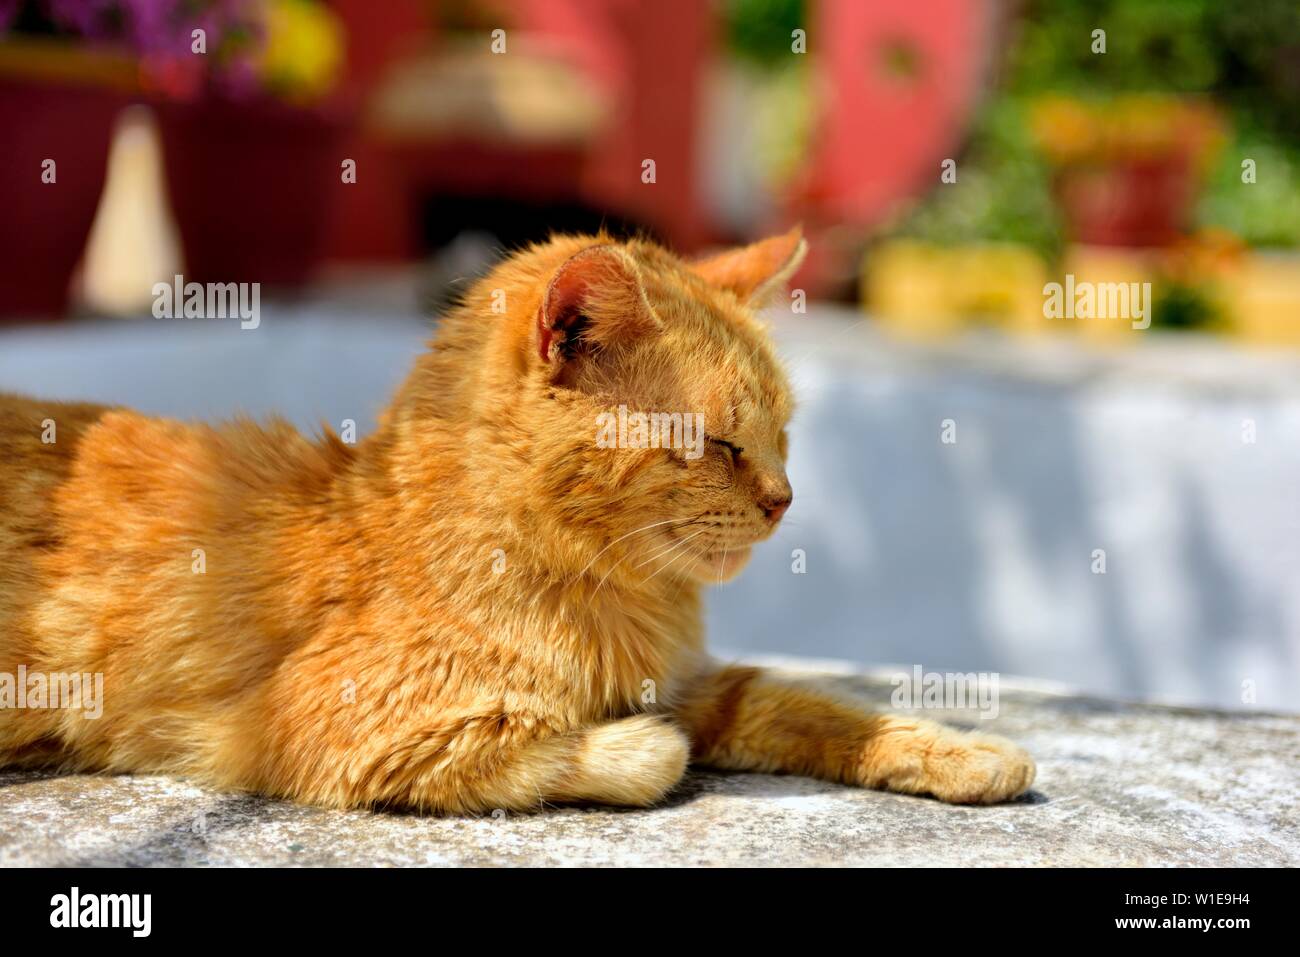 Cat Cat,gingembre, les siestes au soleil, les yeux fermés, eau chaude journée ensoleillée,Theotokos Monastère, Monastère de Paleokastritsa, Corfou, Grèce Banque D'Images